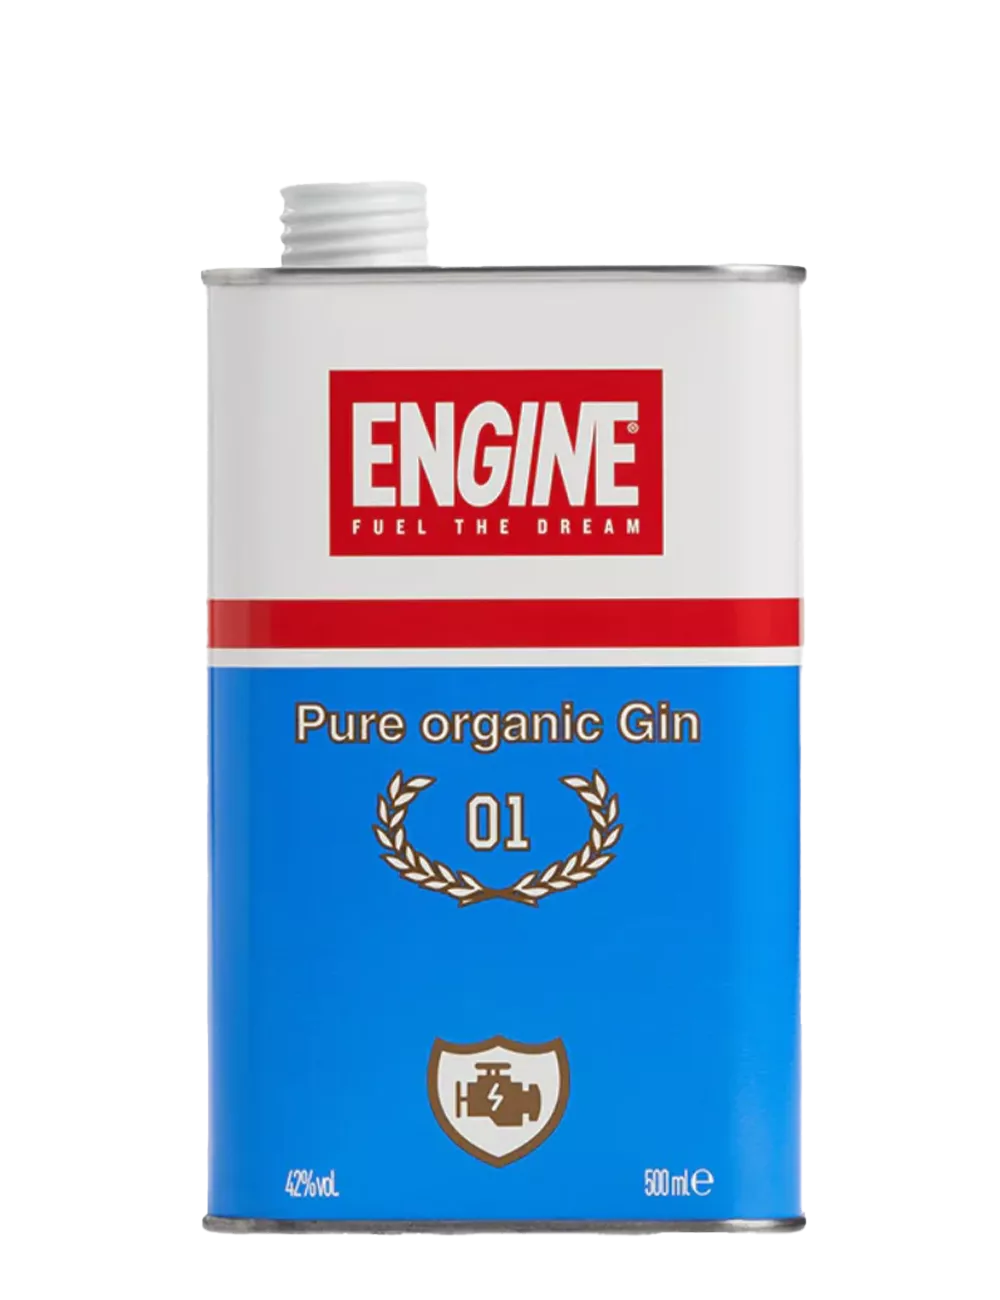 Engine - Distilled gin